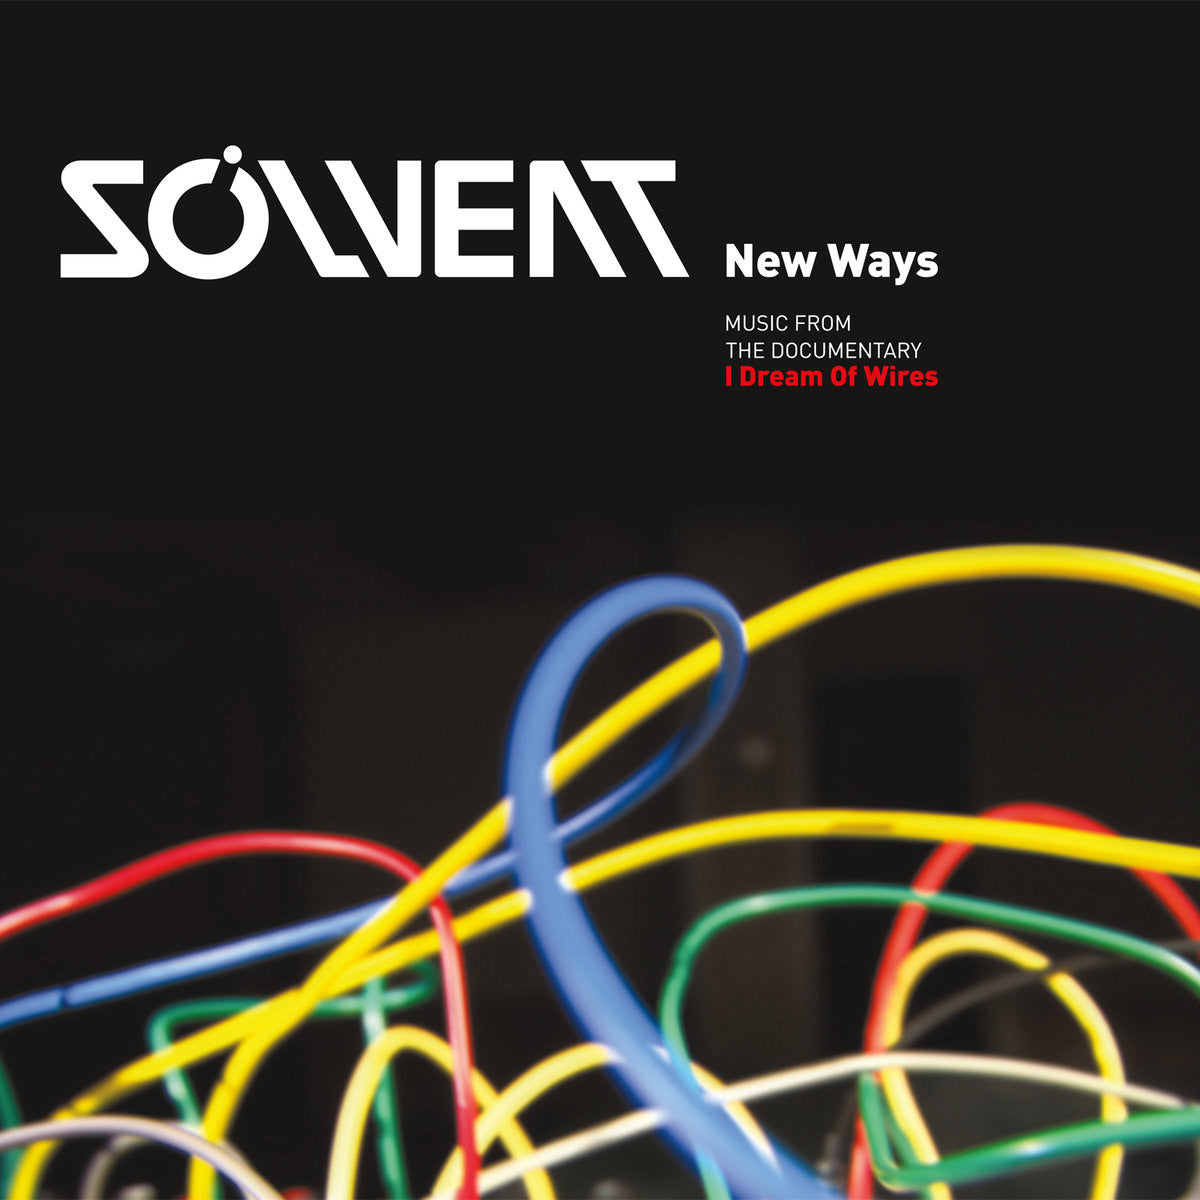 Solvent New Ways – Found Sound